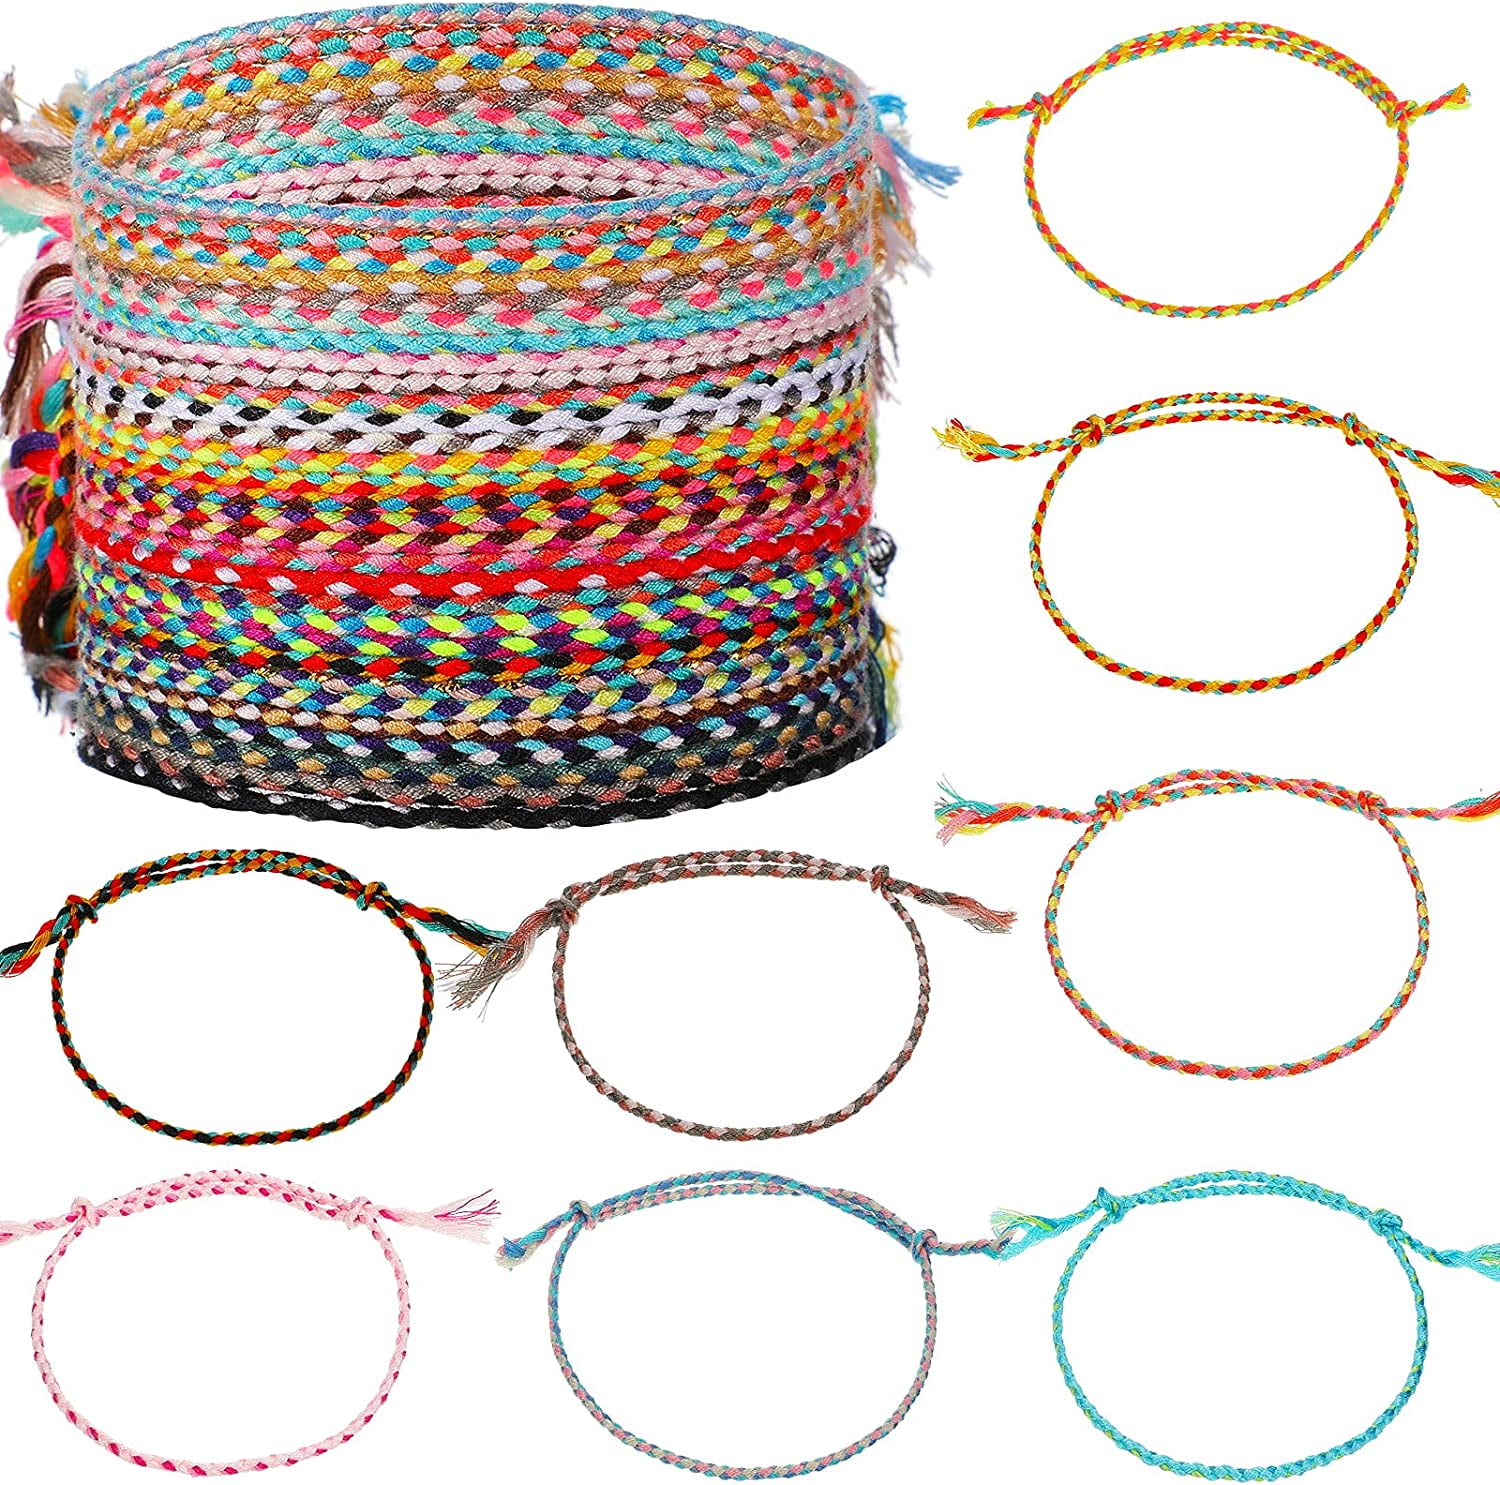 Stack 'em Up! 19 Bracelets to Add to Your Arm Party | Layered bracelets,  Trending bracelets, Fashion